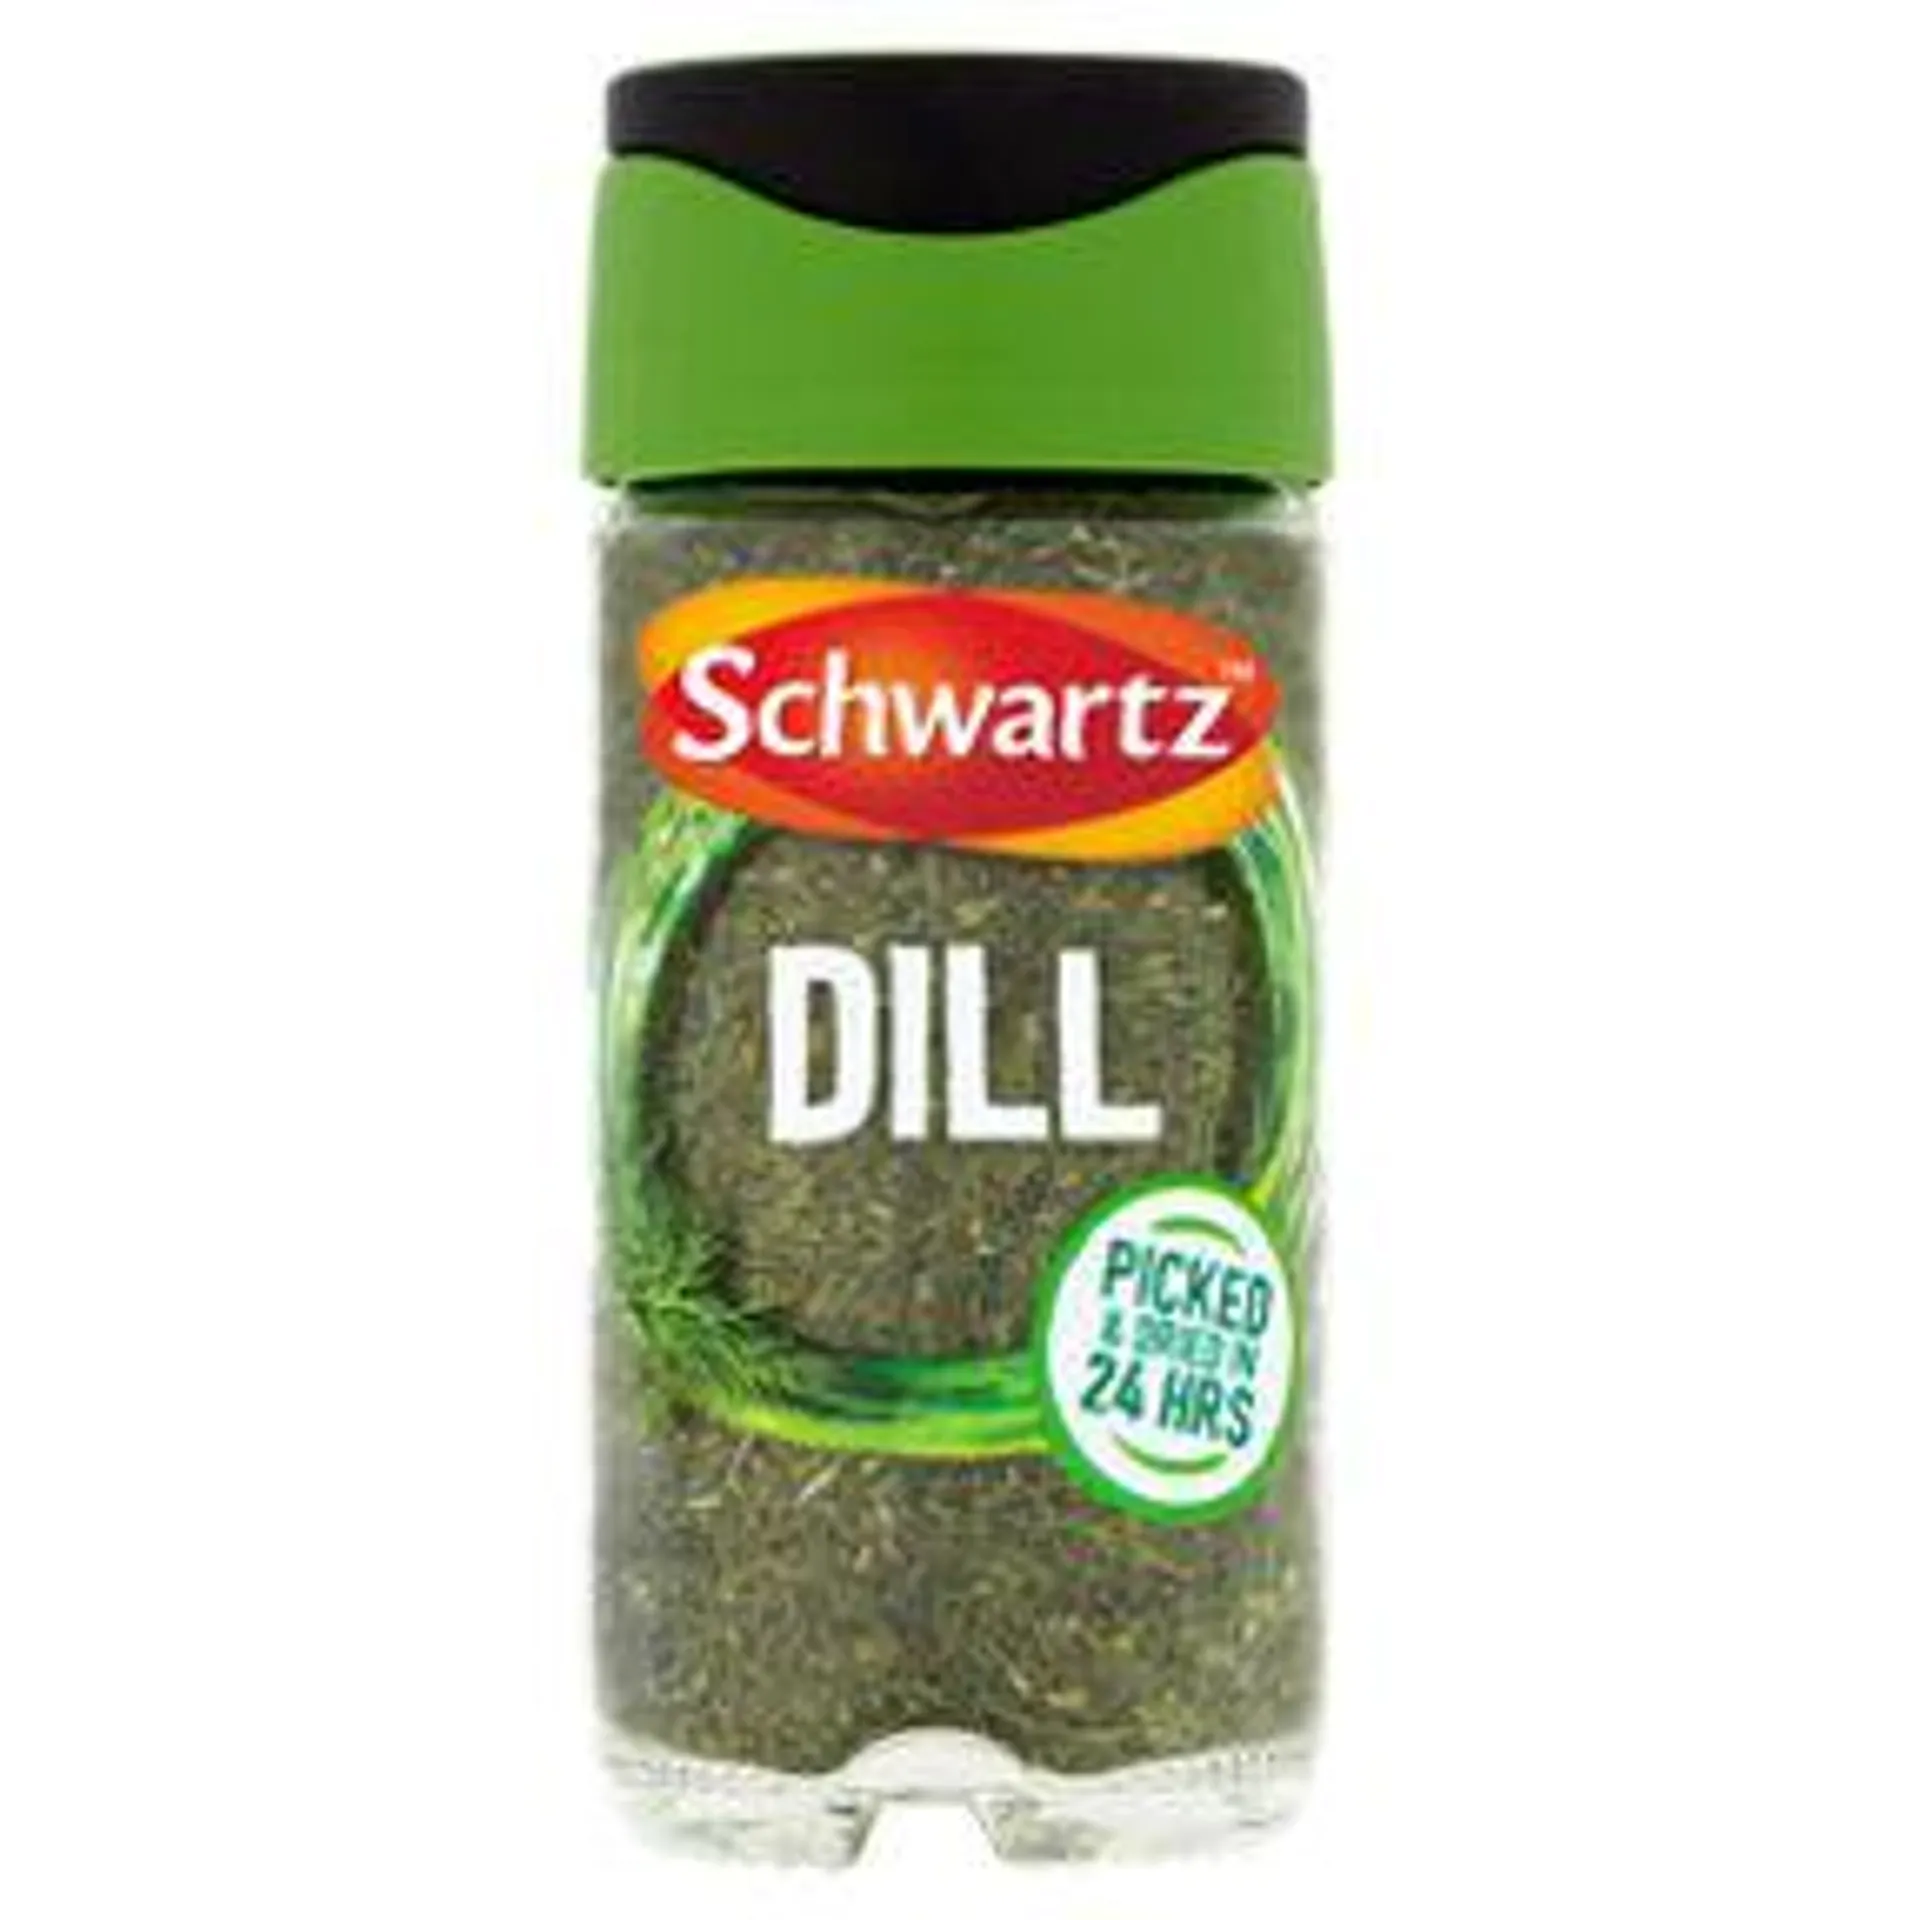 Schwartz Dill